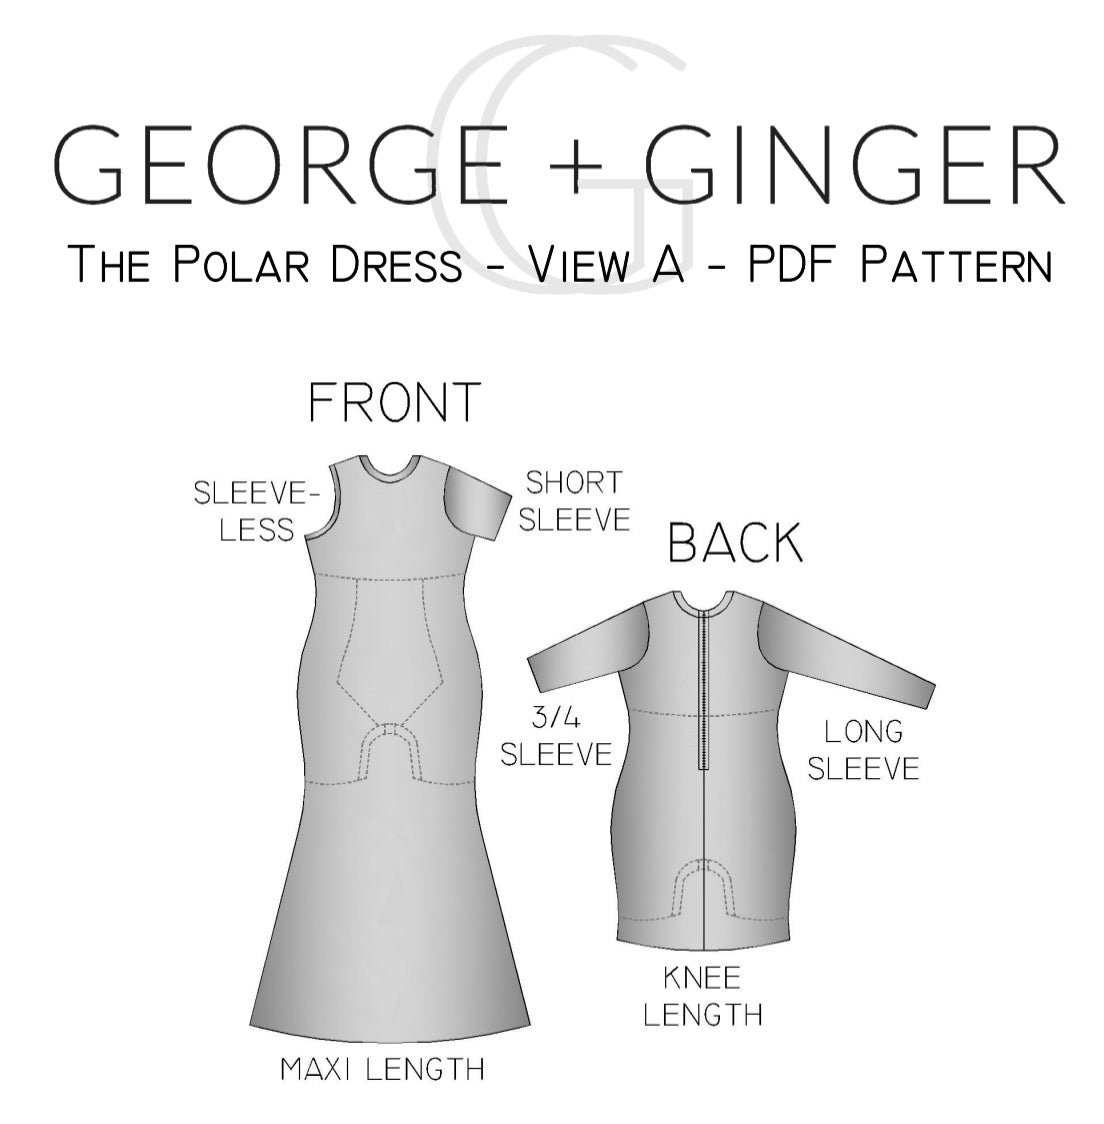 The Polar Dress - View A - PDF Sewing Pattern